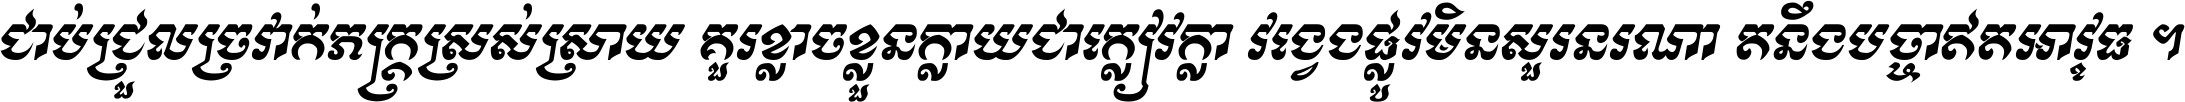 Kh Baphnom Buddha Story Italic